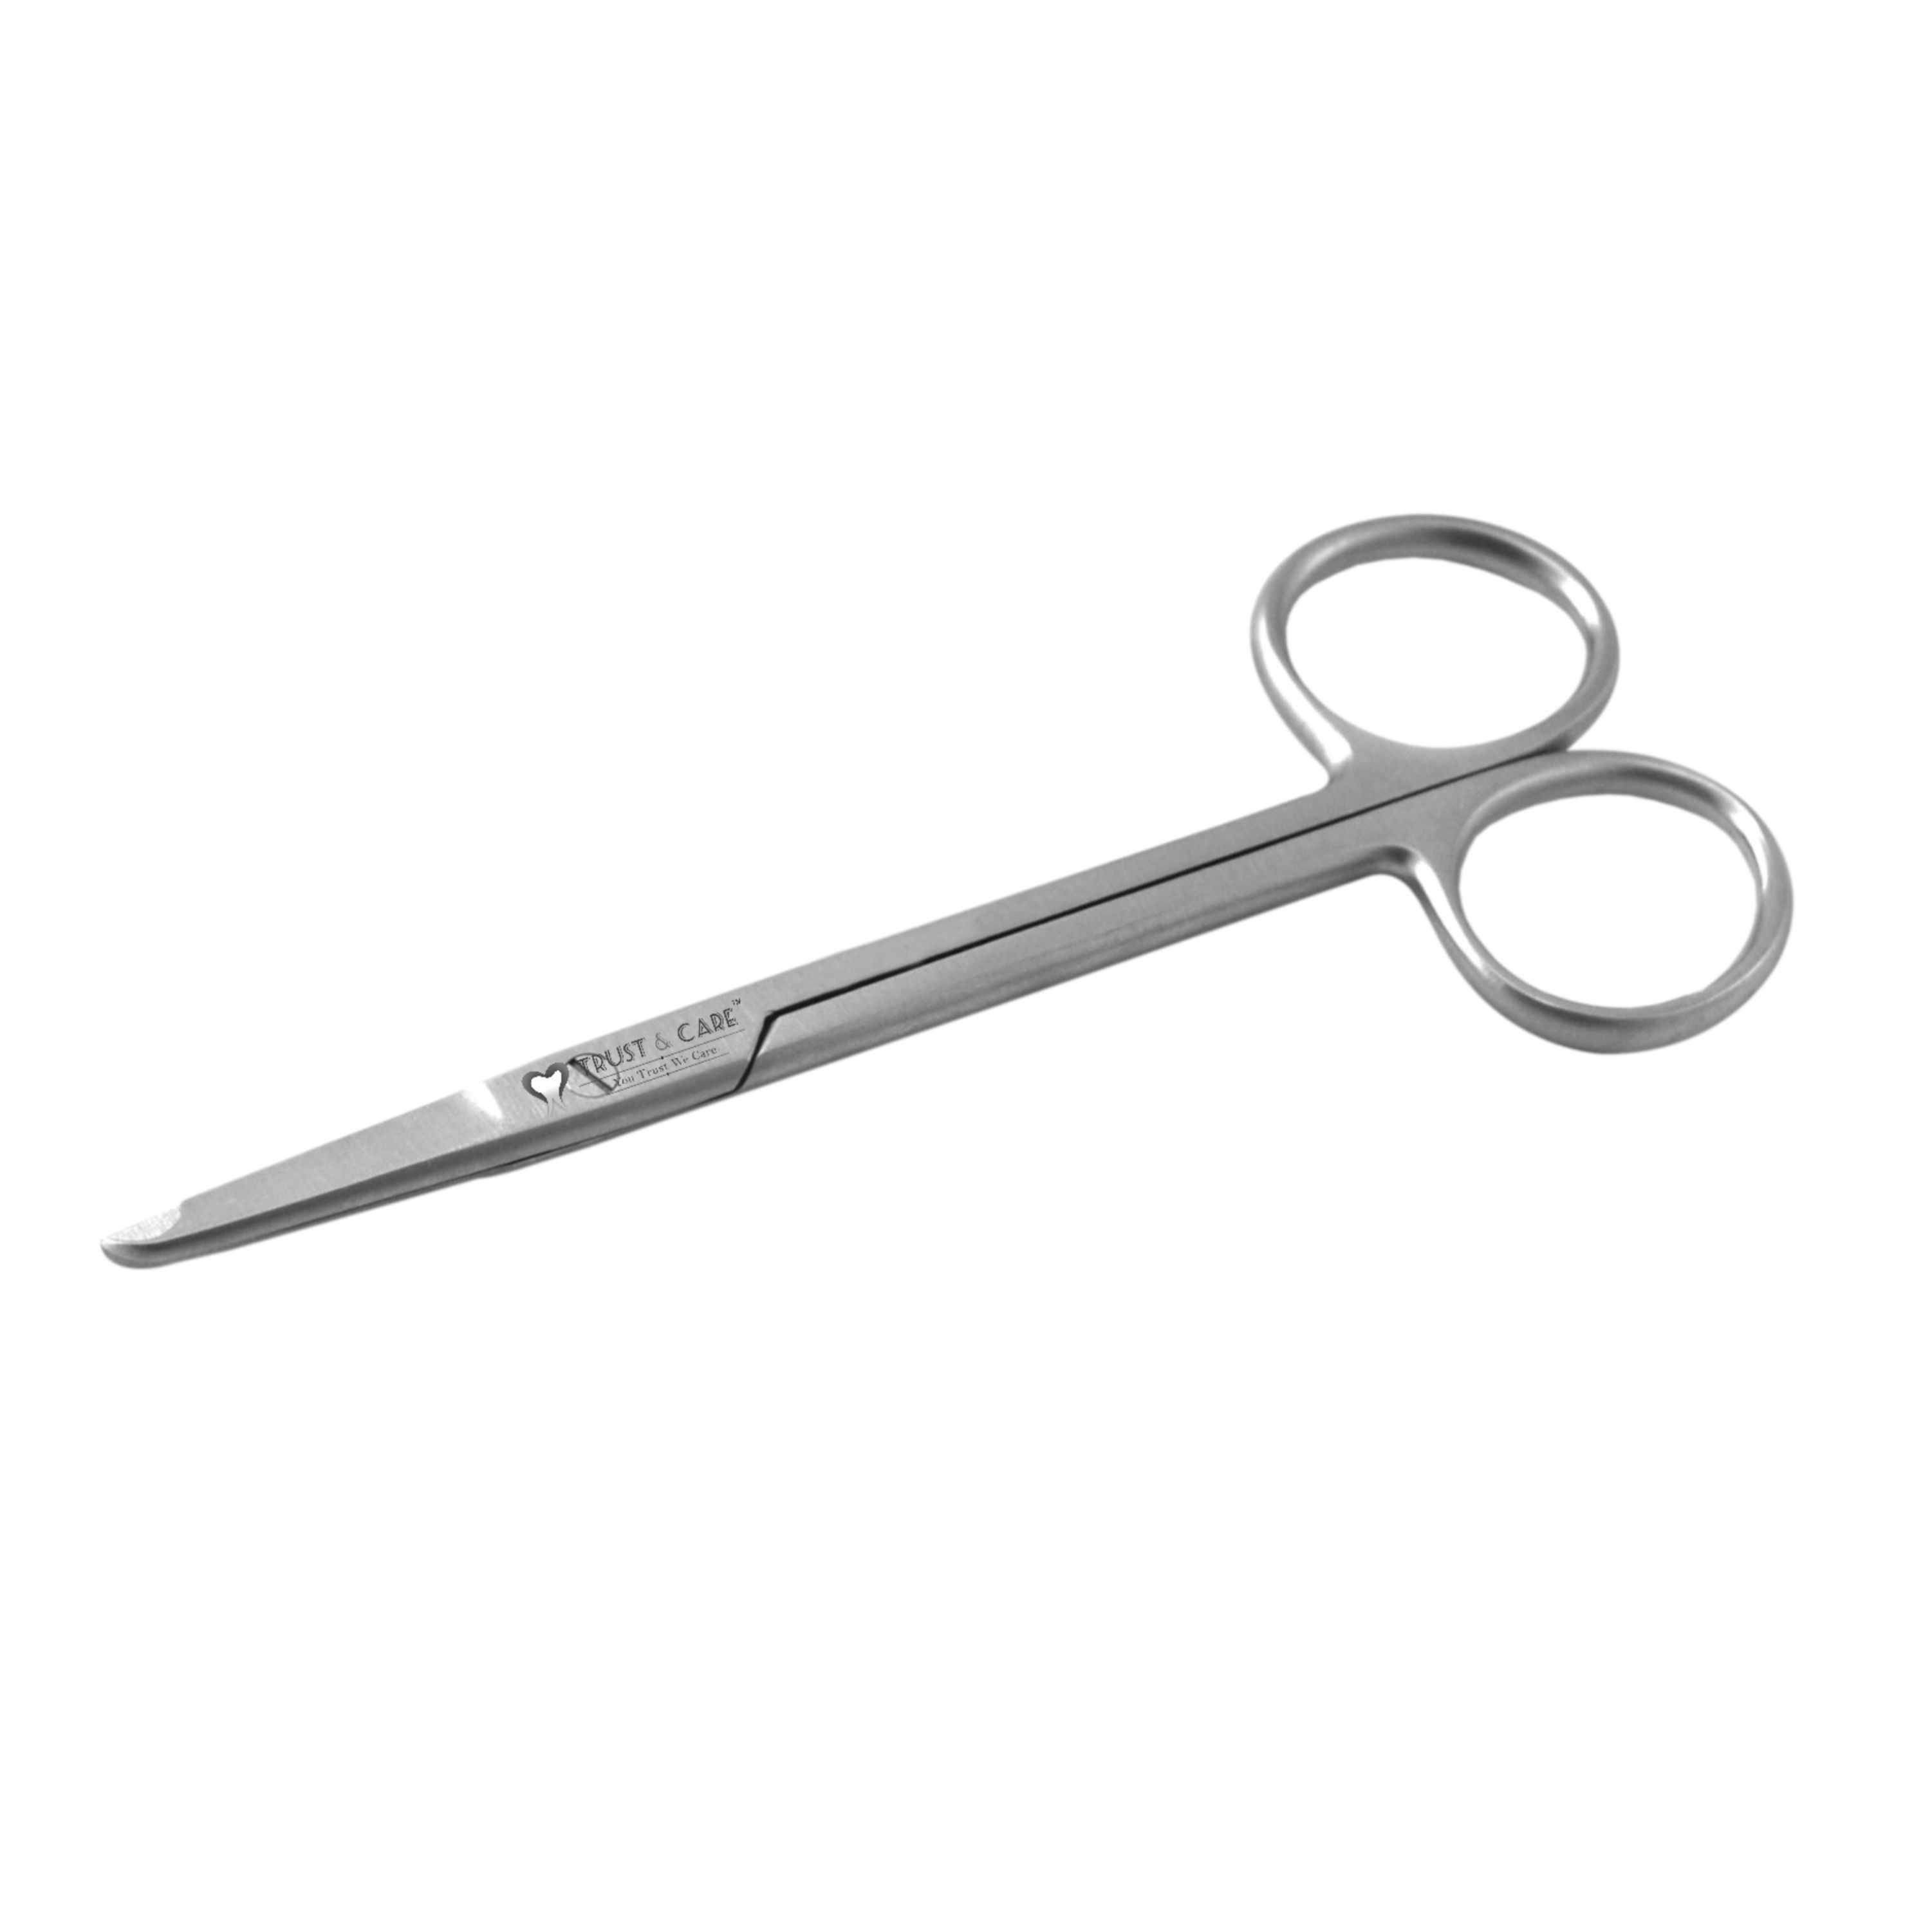 Trust & Care Spencer Suture Cutting Scissor 13 Cm Straight